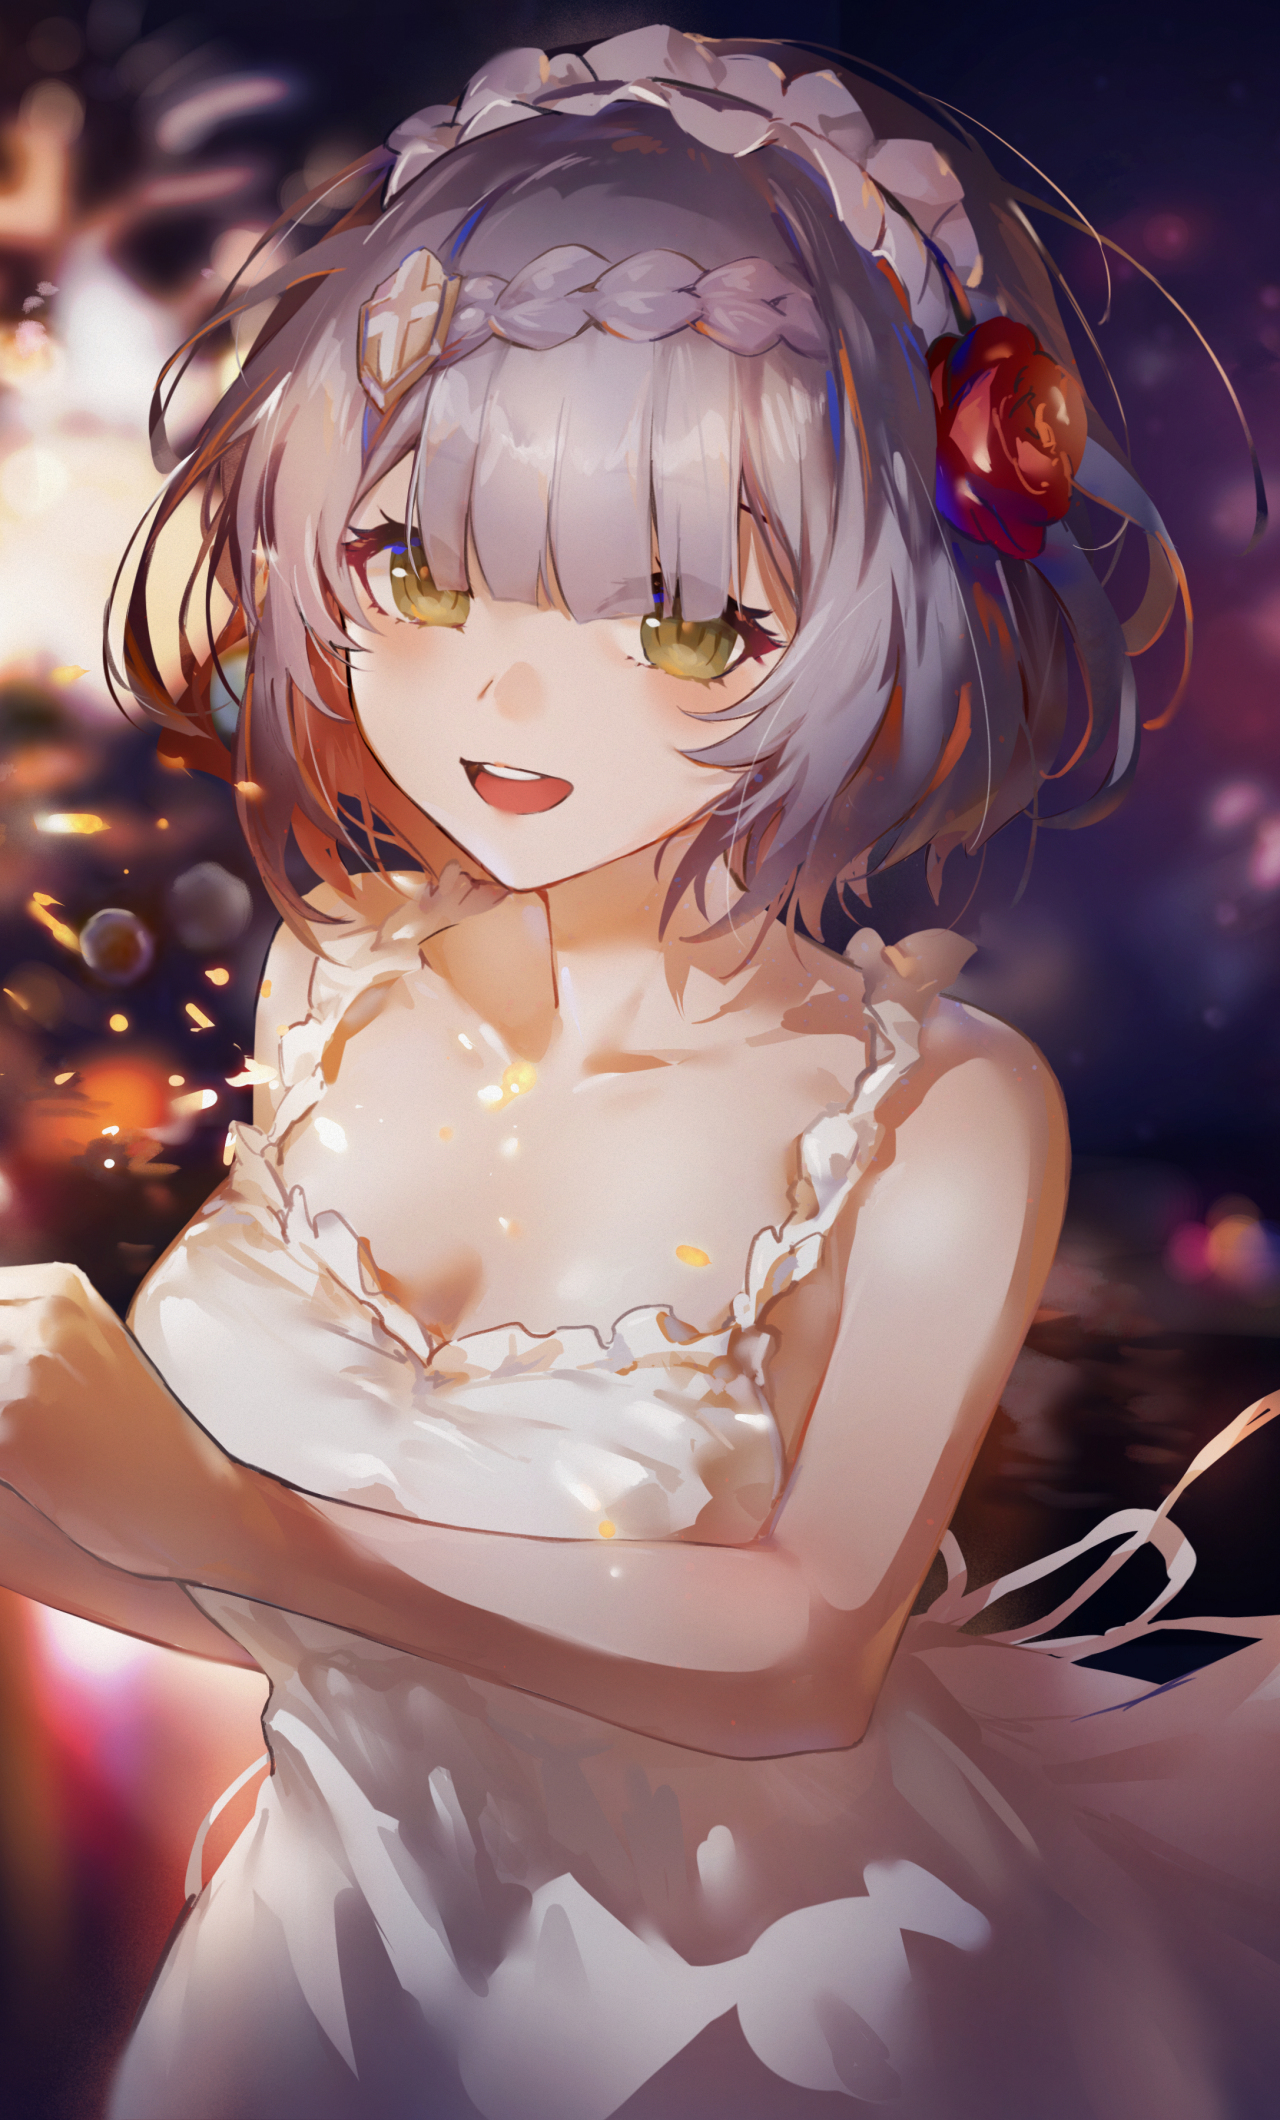 White dress, cute anime girl, art, 1280x2120 wallpaper